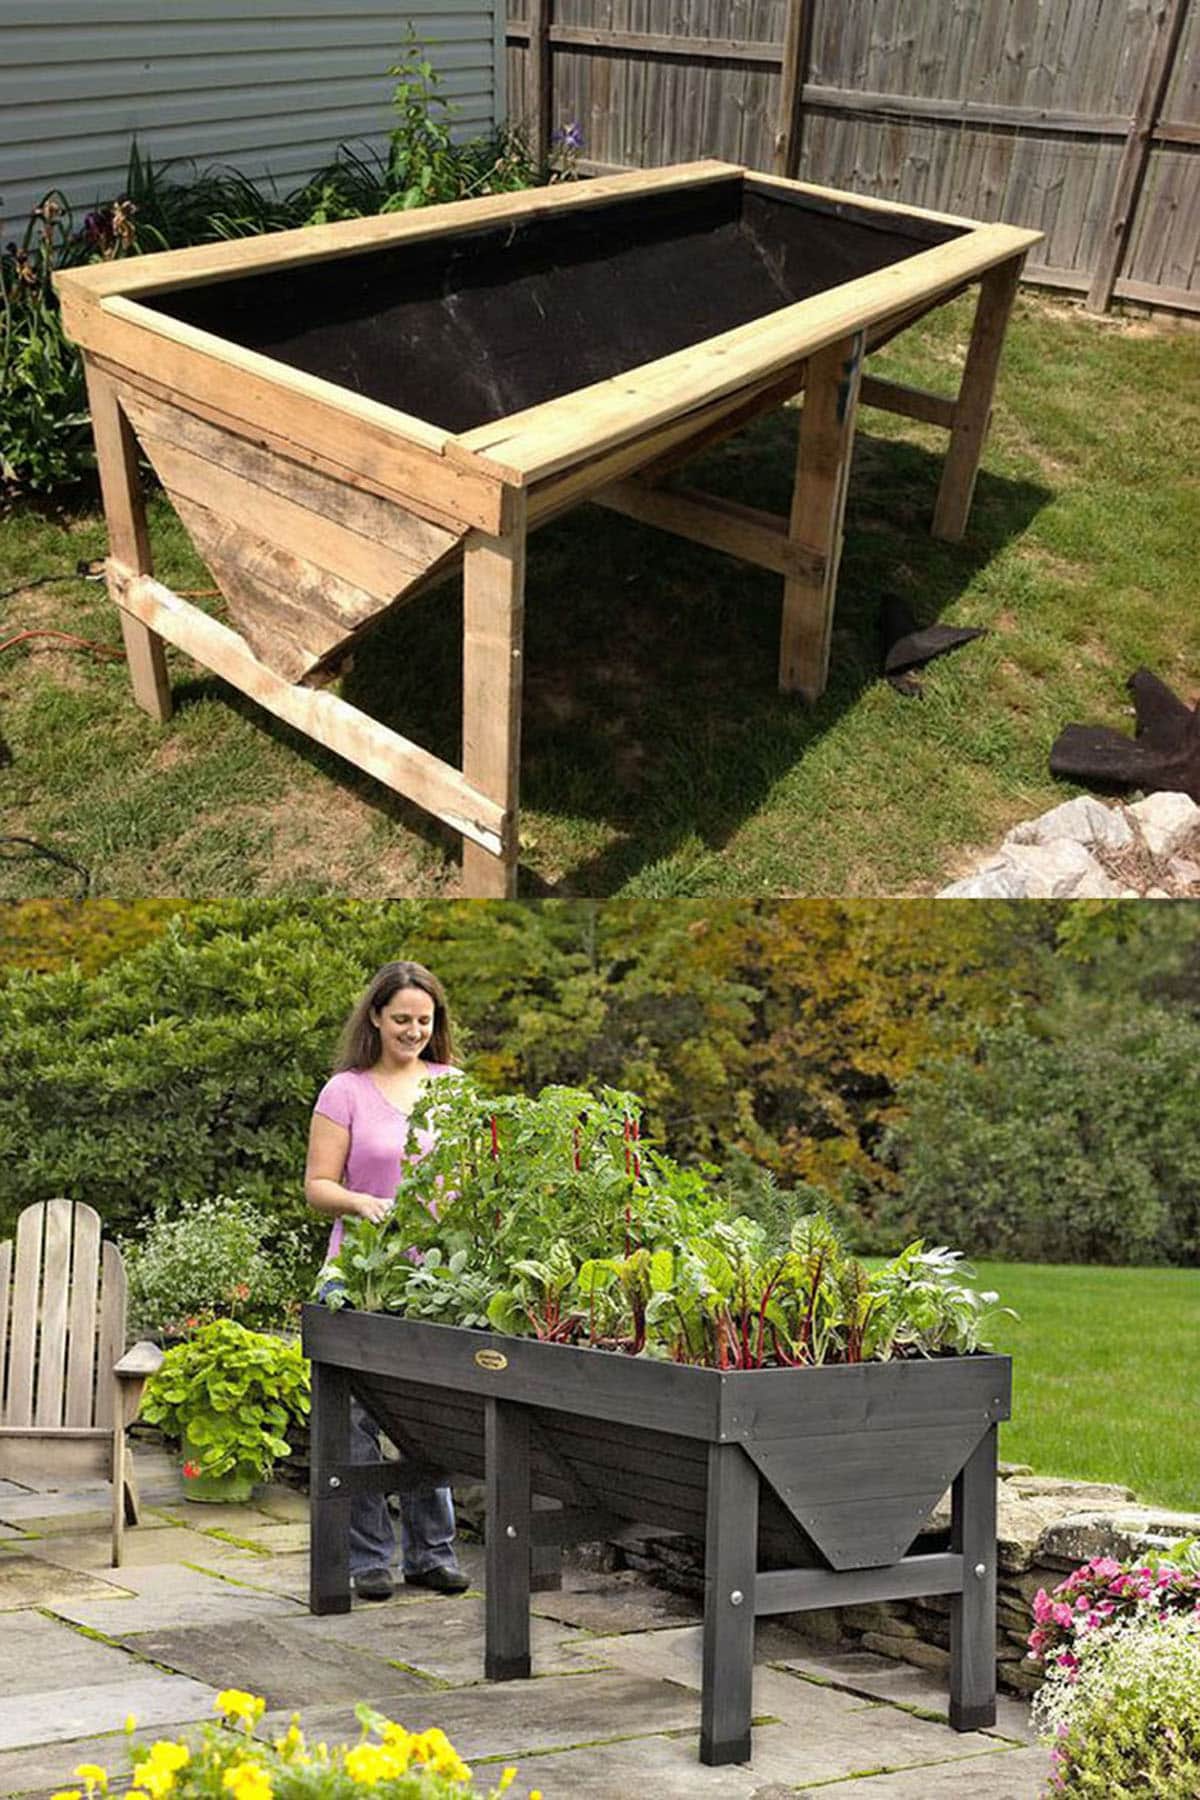 How to Build Raised Garden Beds (DIY)